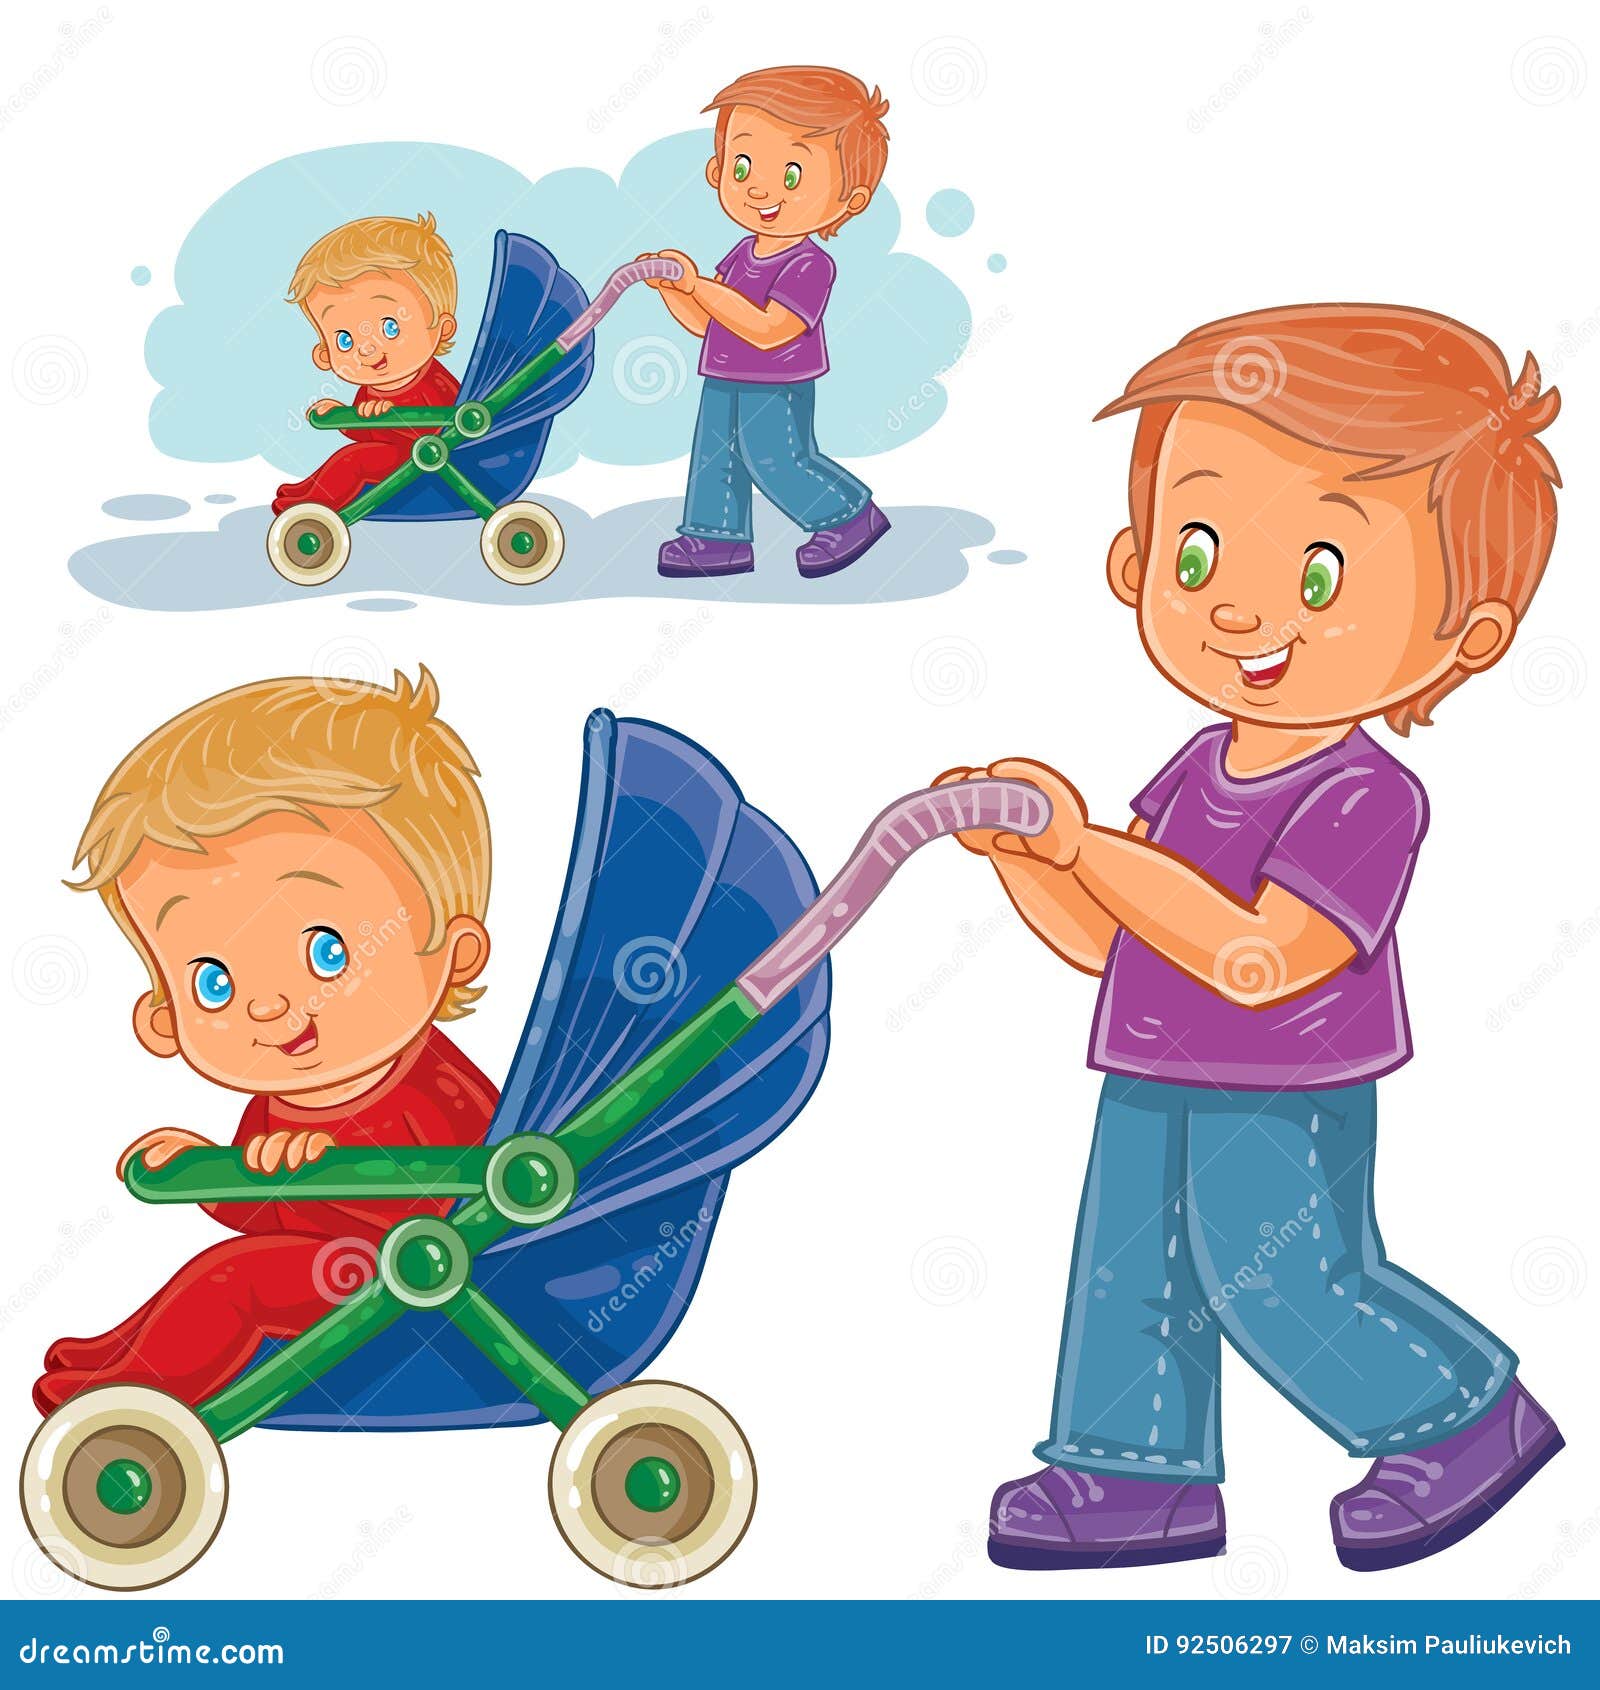 Помощь младшему другу. Коляска с ребенком мультяшная. Мальчик катает коляску. Коляска для мальчика. Мальчик в коляске рисунок.